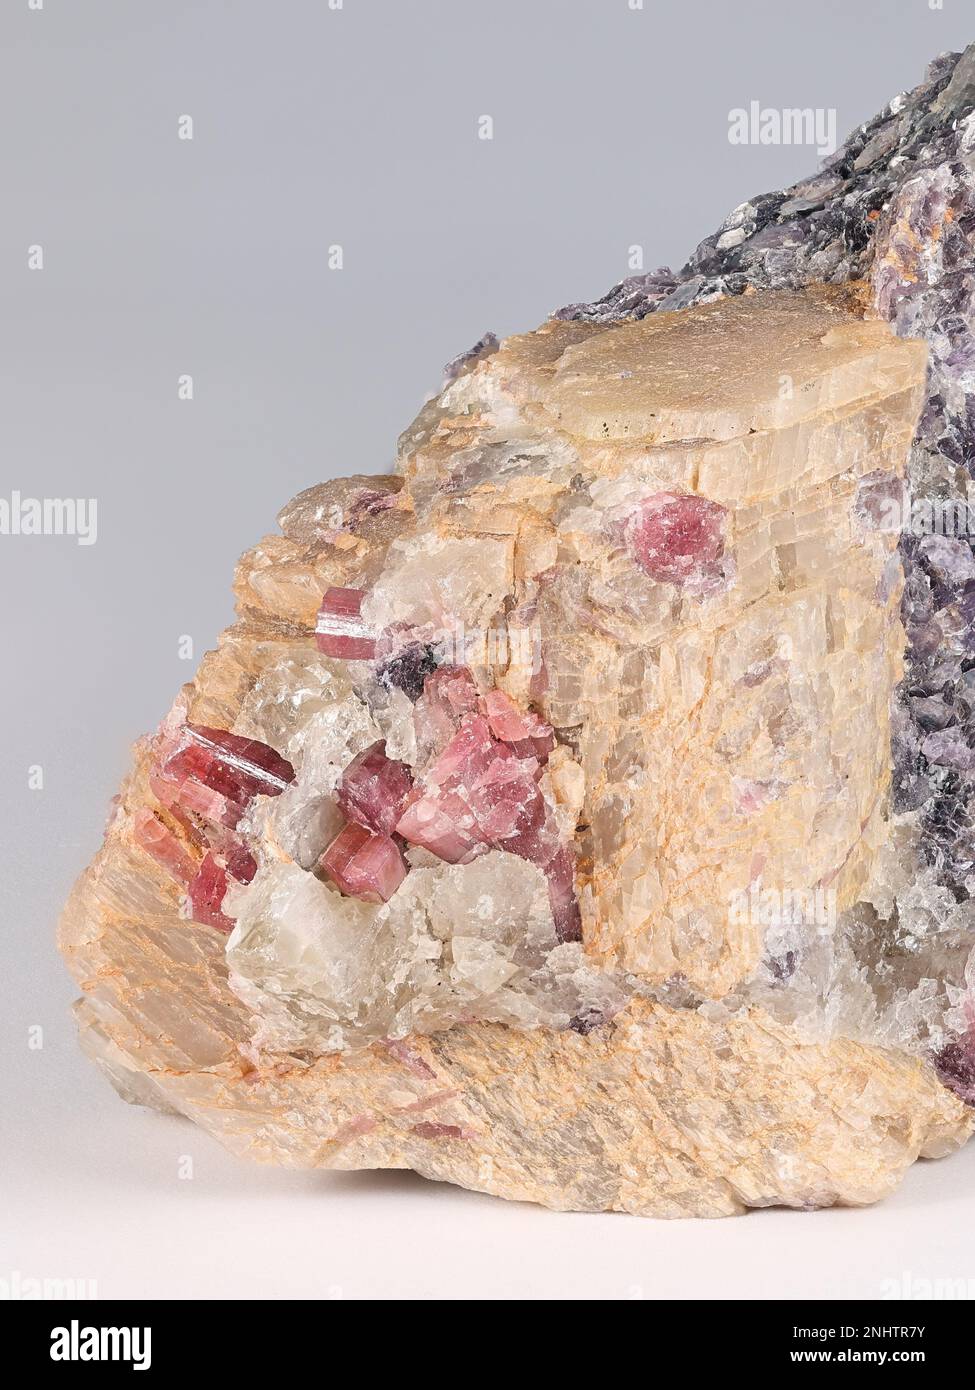 Lithium-Erz-Spodumene, Lithium-Mica-Lepidolit und rote Elbaitkristalle aus dem Haapaluoma-Lithiumbruch in Finnland Stockfoto